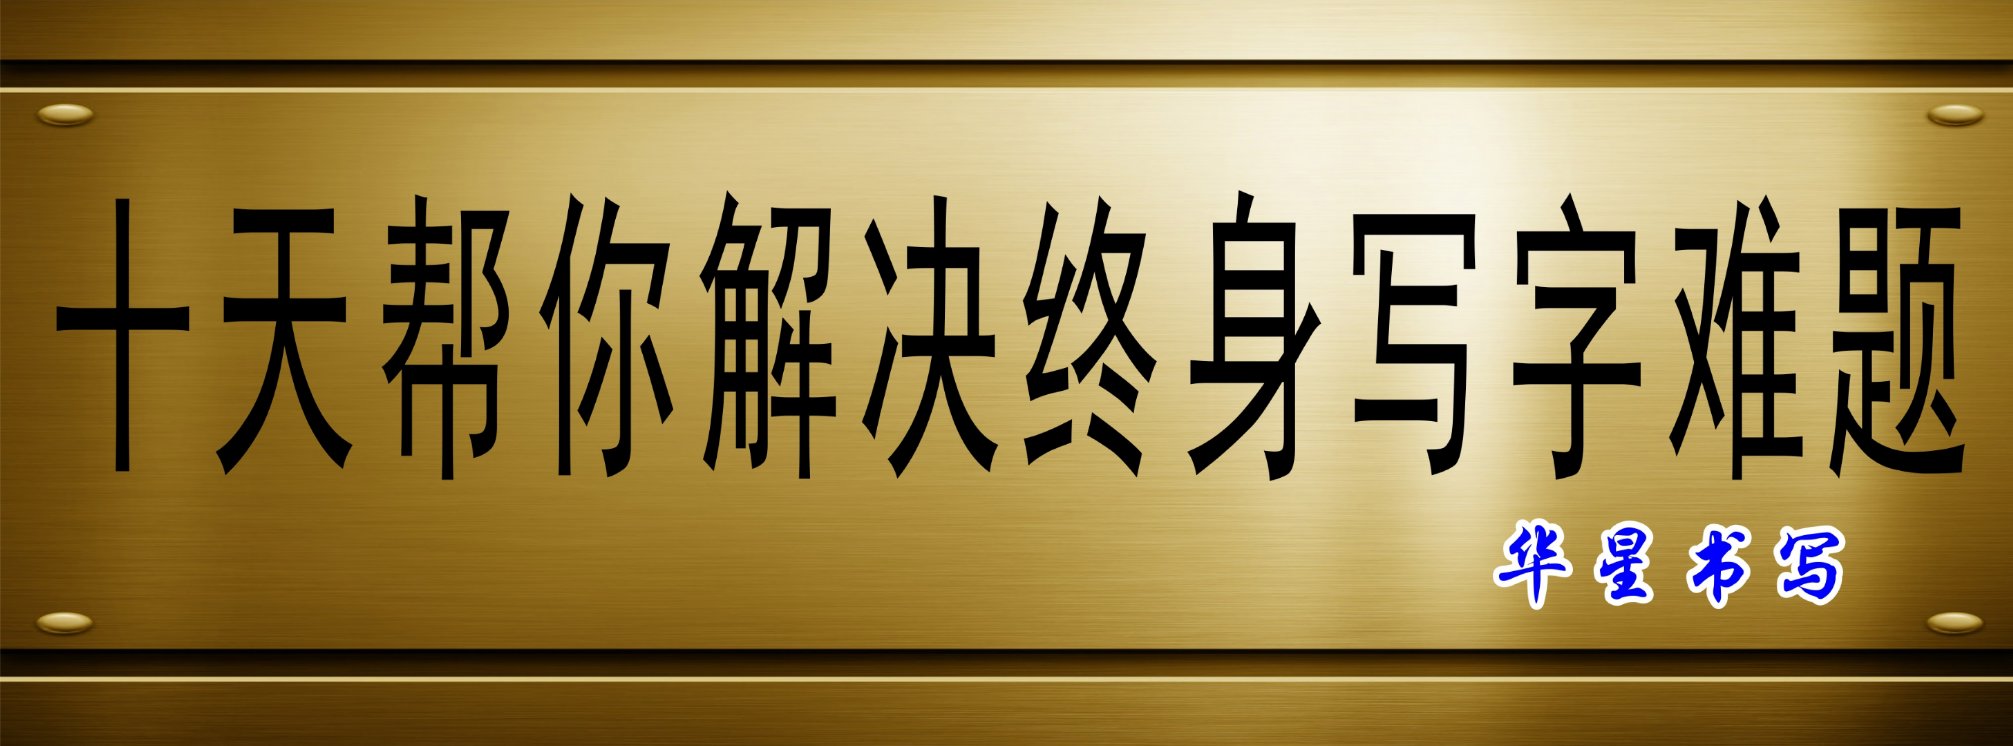 华星汉字书写|推动汉字书写标准化|规范汉字书写|华星书写全国招商合作 